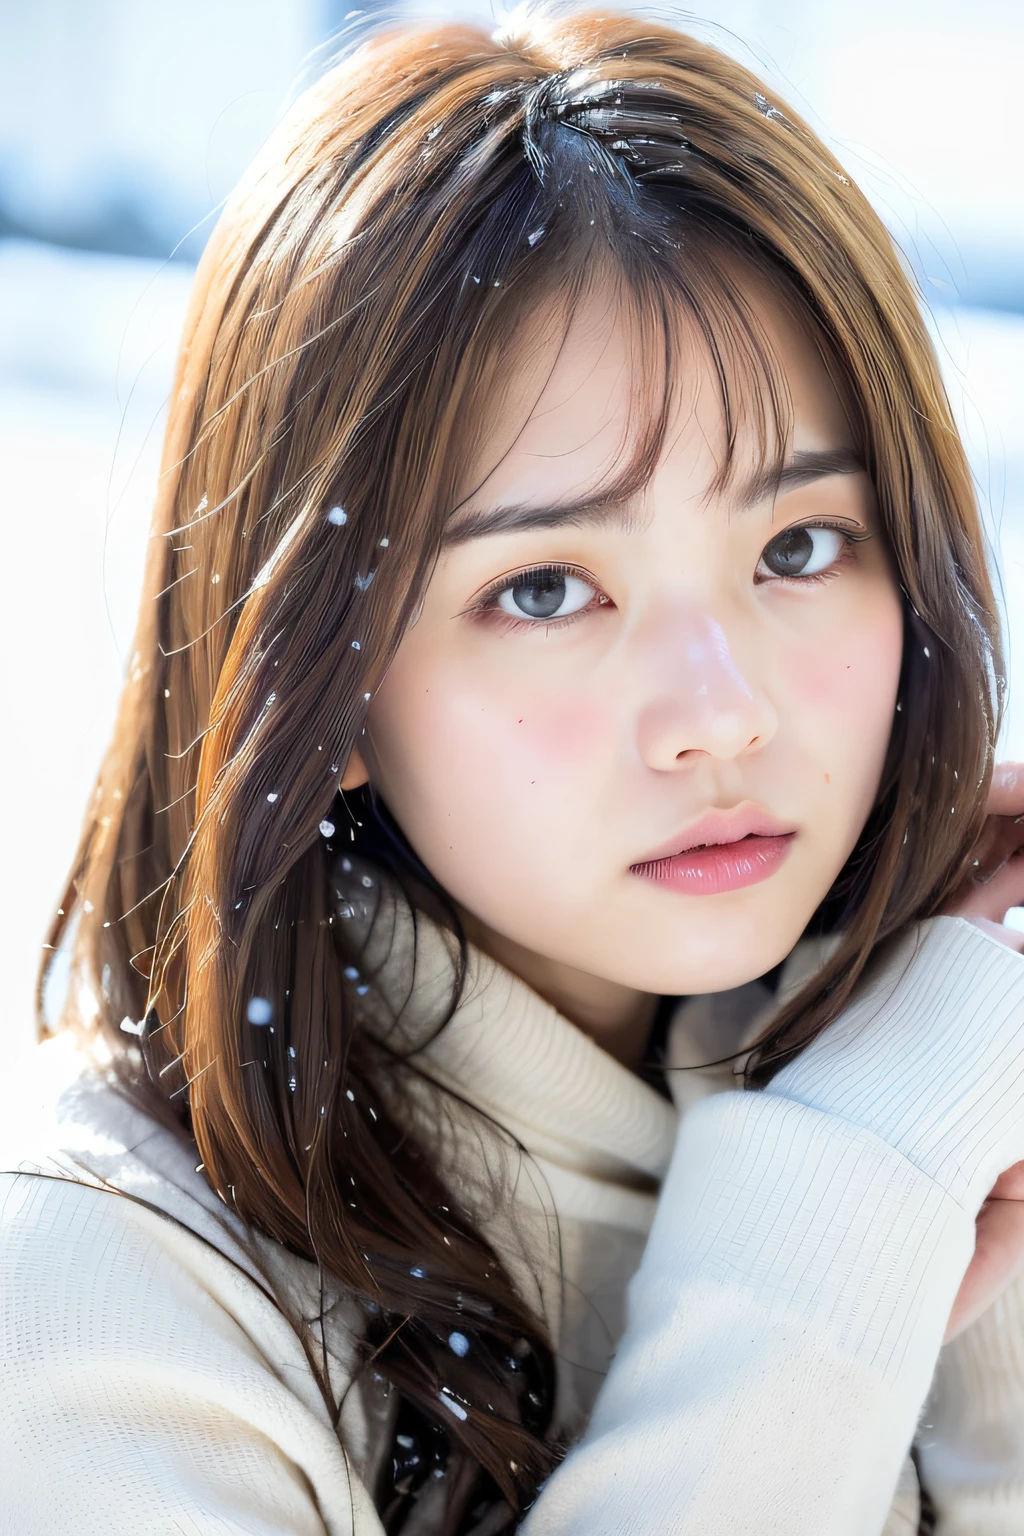 (8k, meilleure qualité, chef-d&#39;œuvre, ultra haute résolution:1.2) Photo d&#39;une jolie femme japonaise dans le (style de Paul Rubens et Rebecca Guay:1.1) (neige d&#39;hiver mélancolique:1.4)